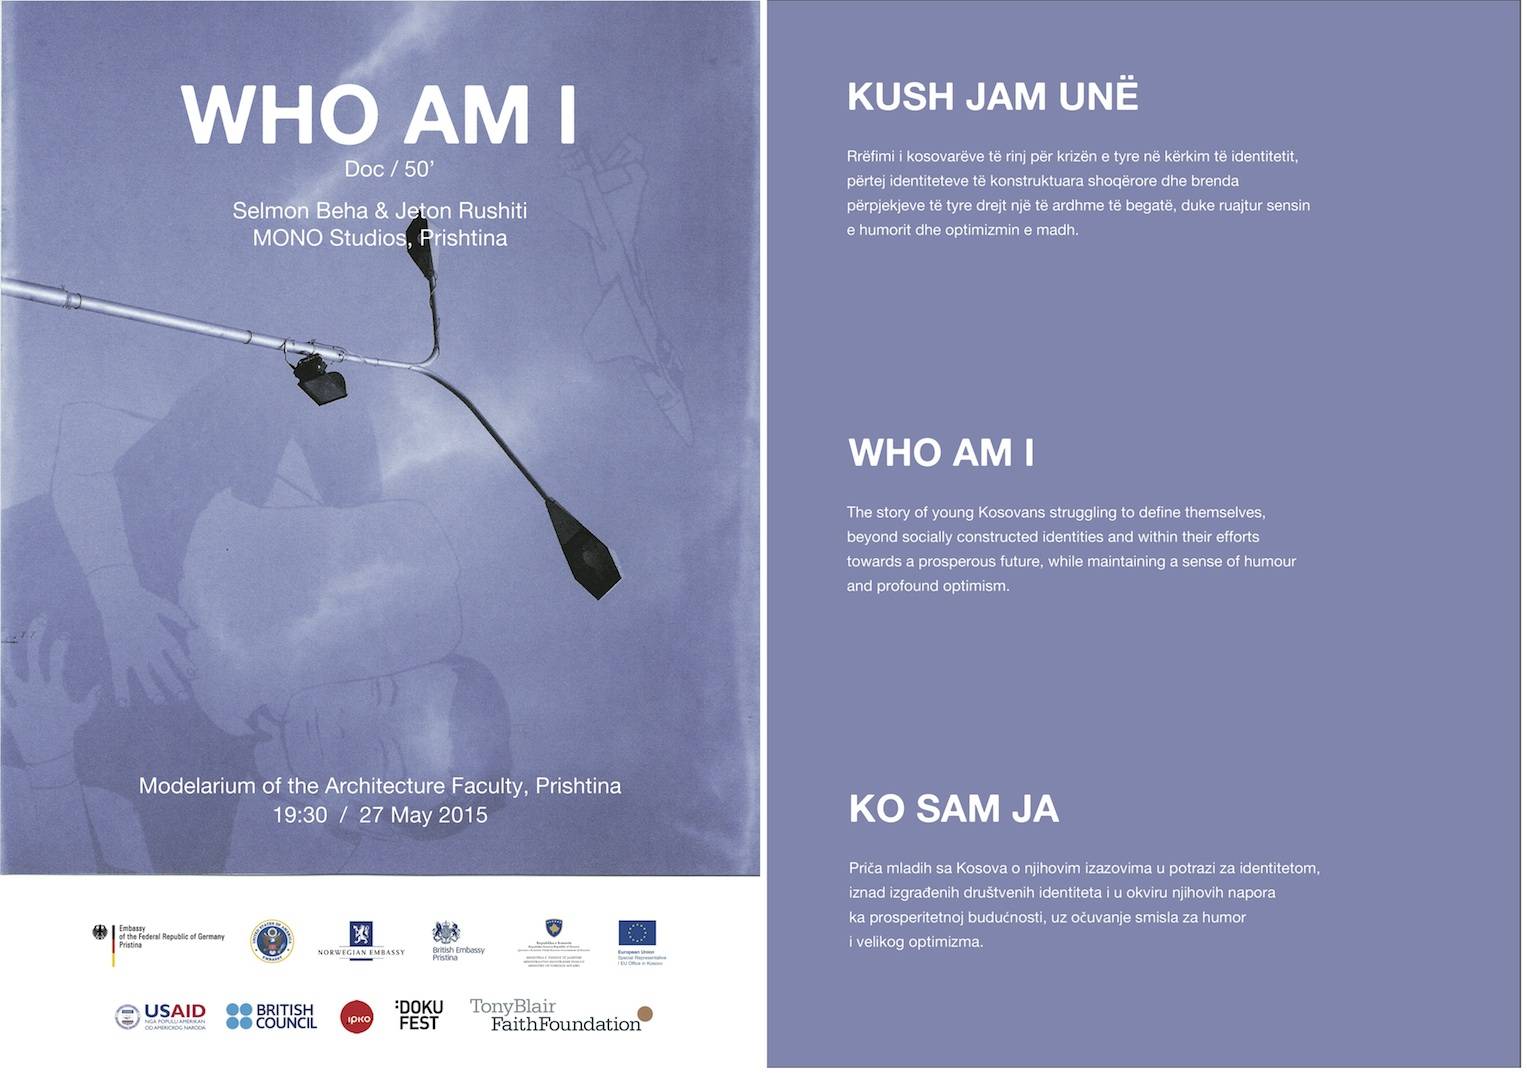 Nesër shfaqet premiera e filmit “Kush jam unë”